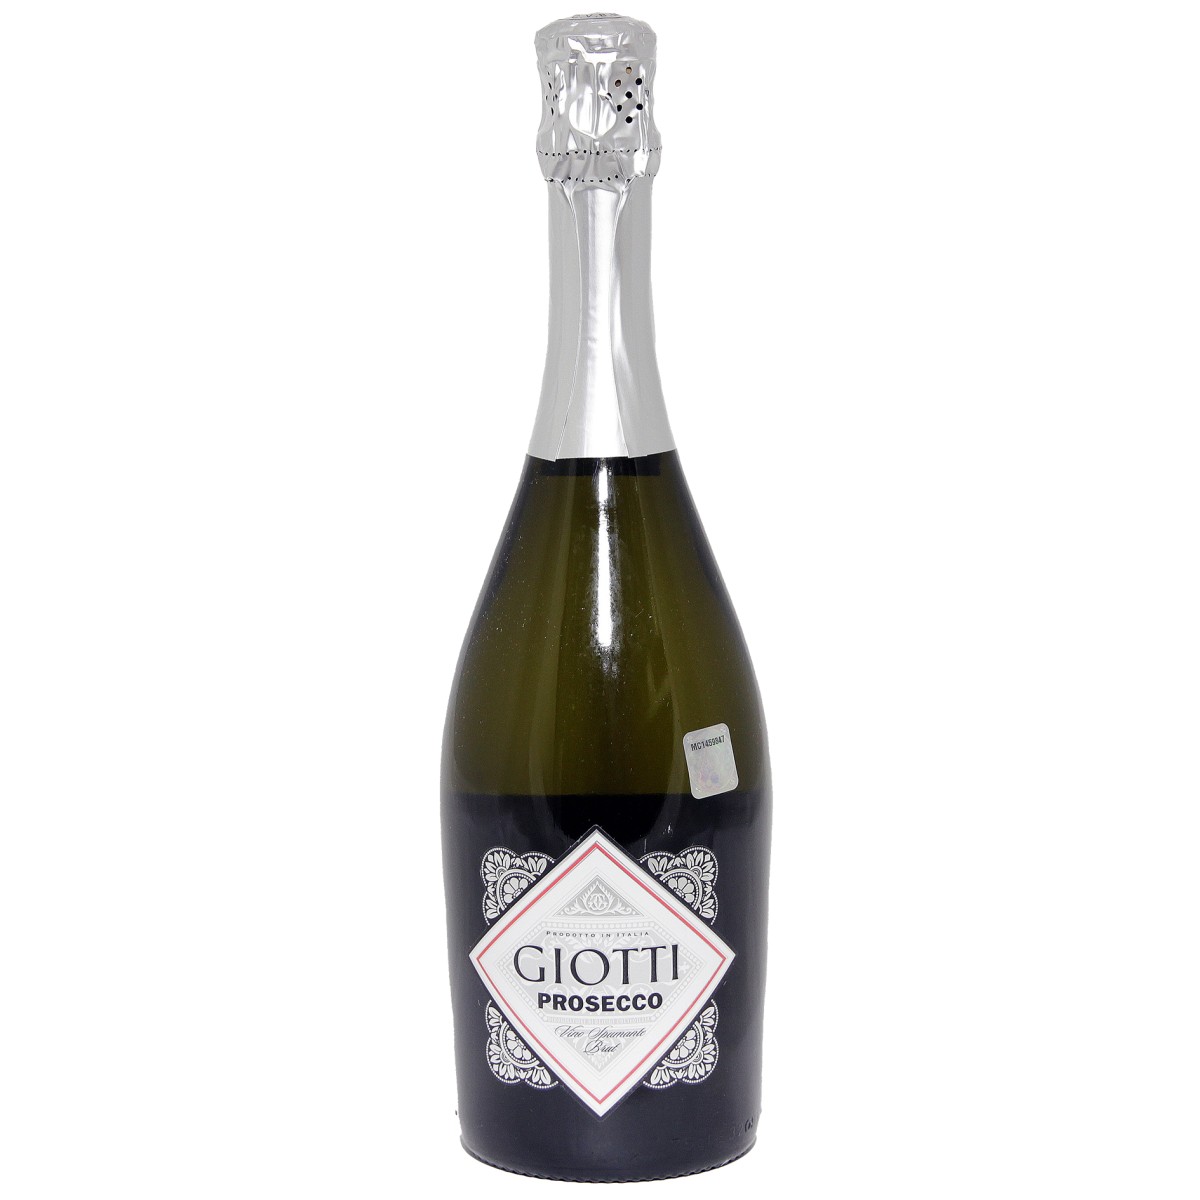 Giotti Prosecco Brut 11% 75cl